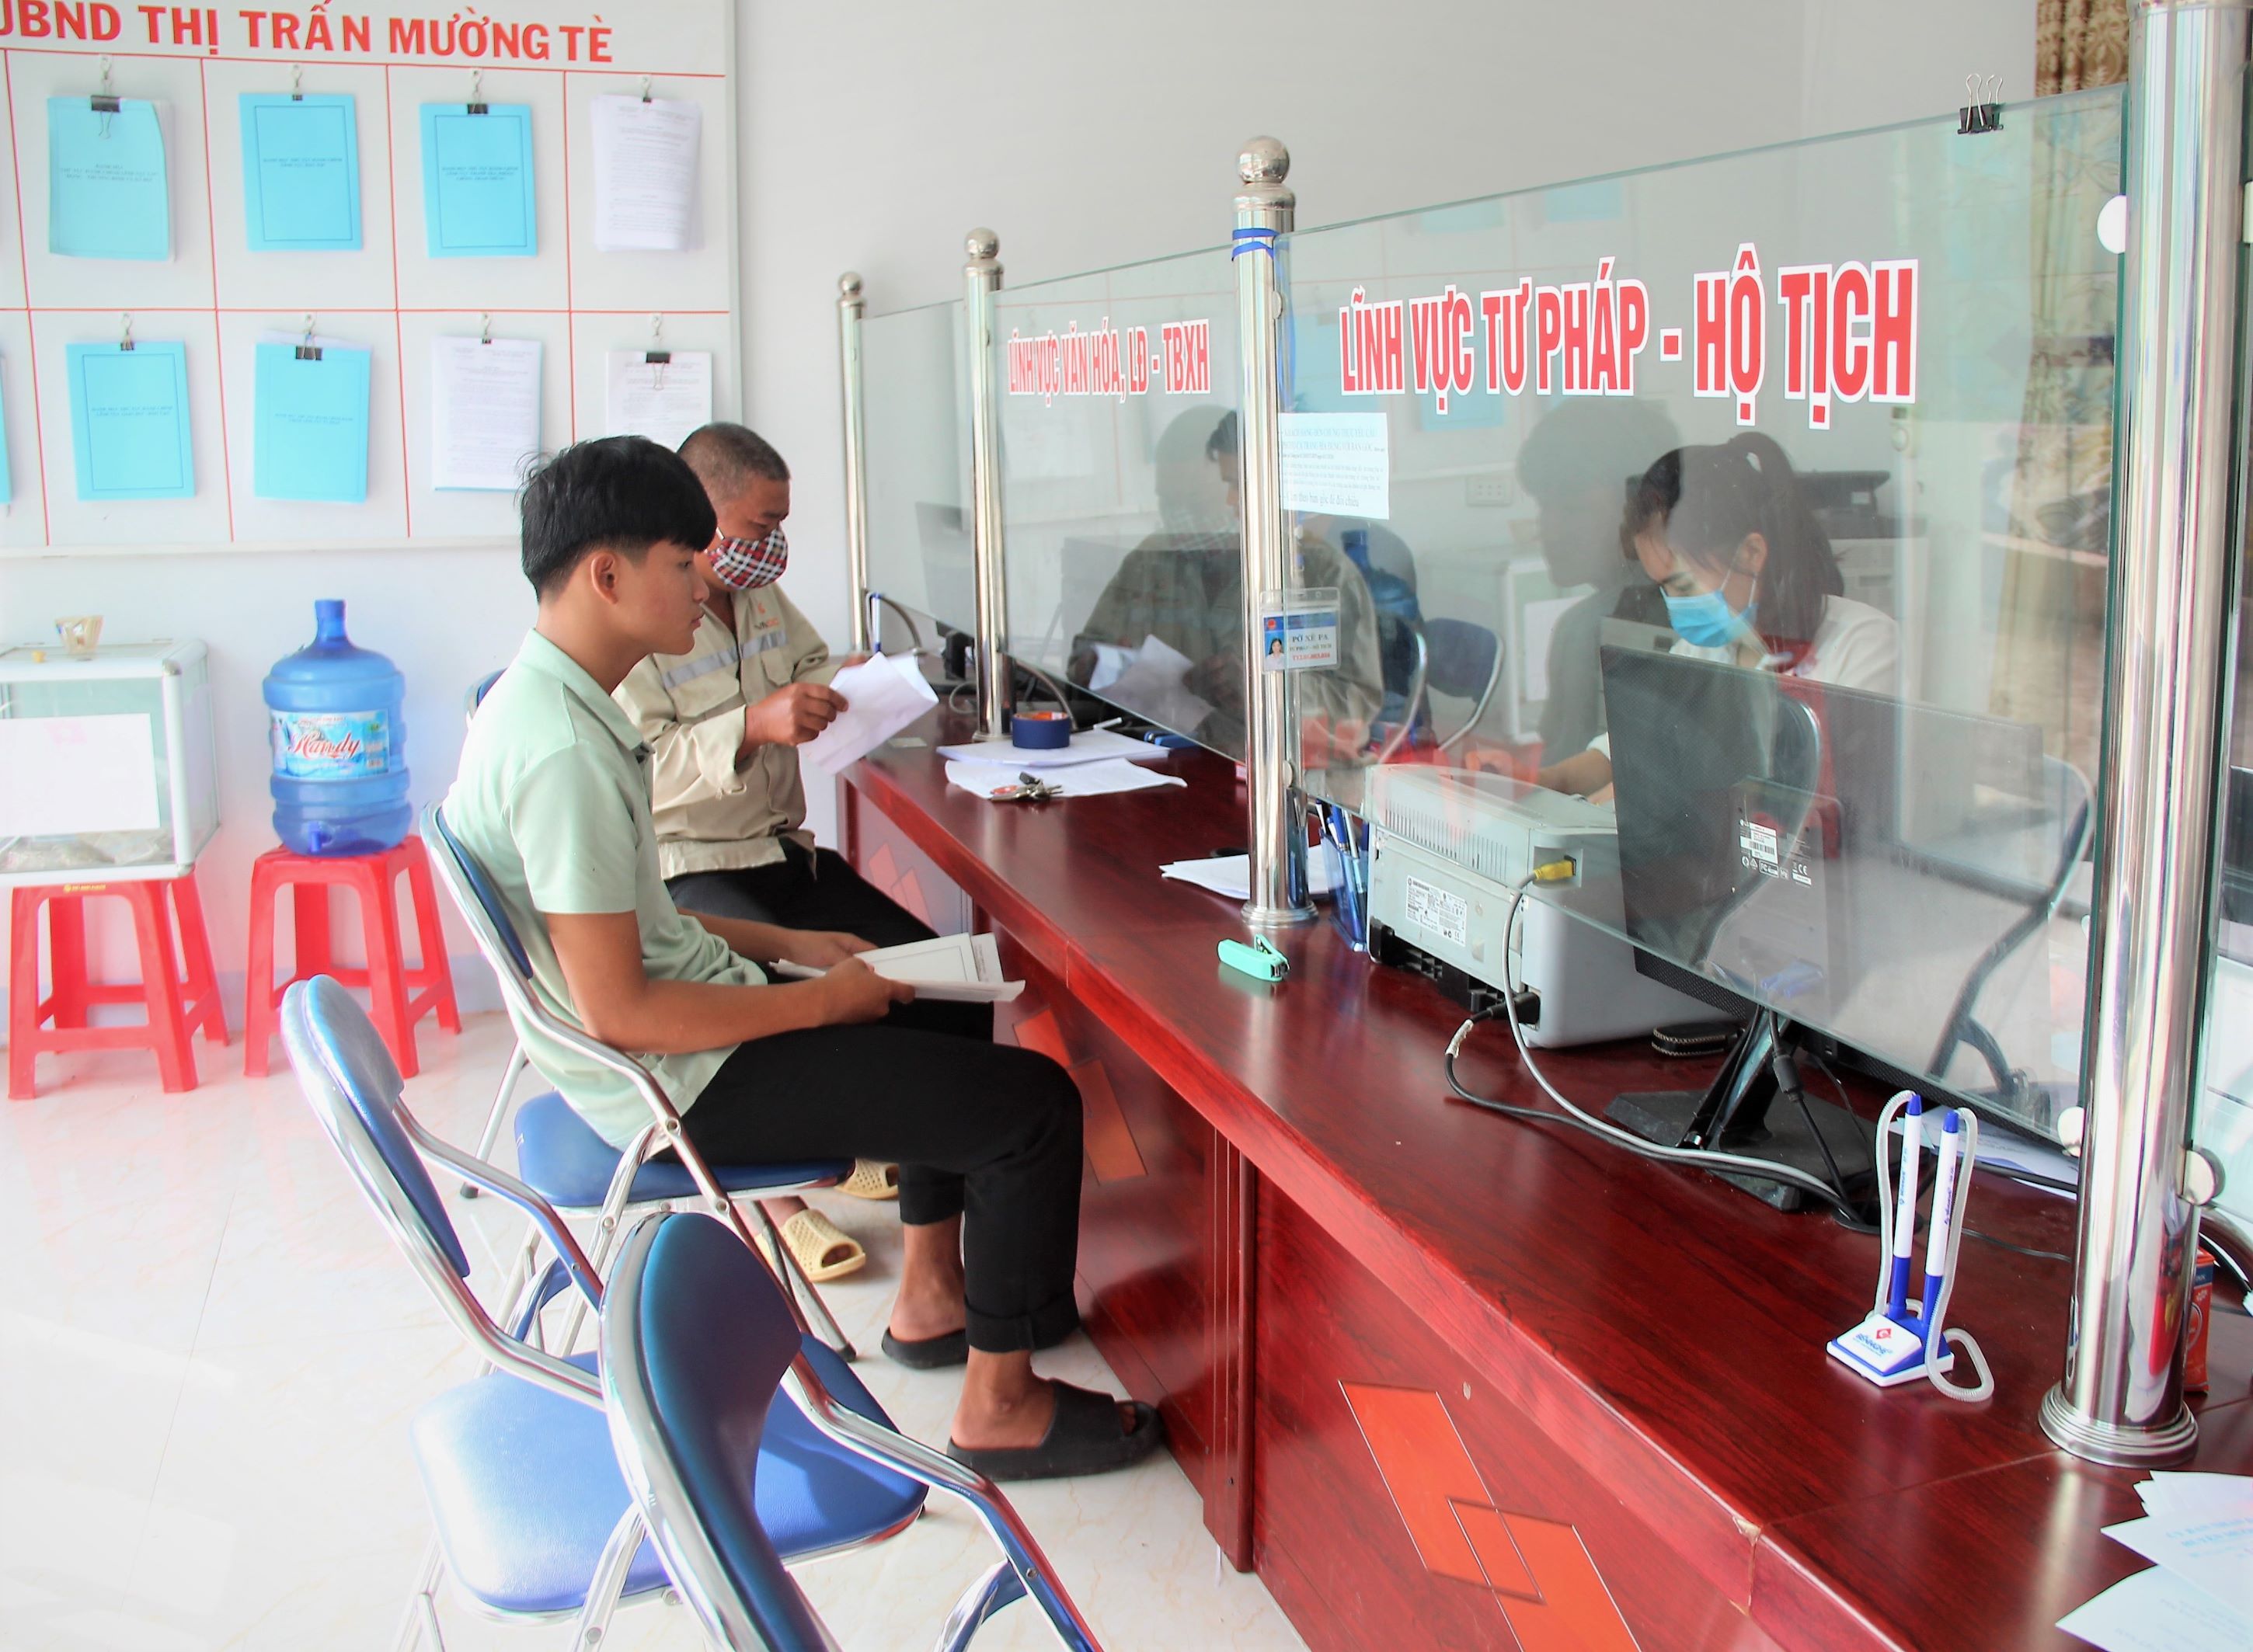 Cán bộ Bộ phận "cơ chế một cửa" thị trấn Mường Tè giải quyết TTHC cho người dân.